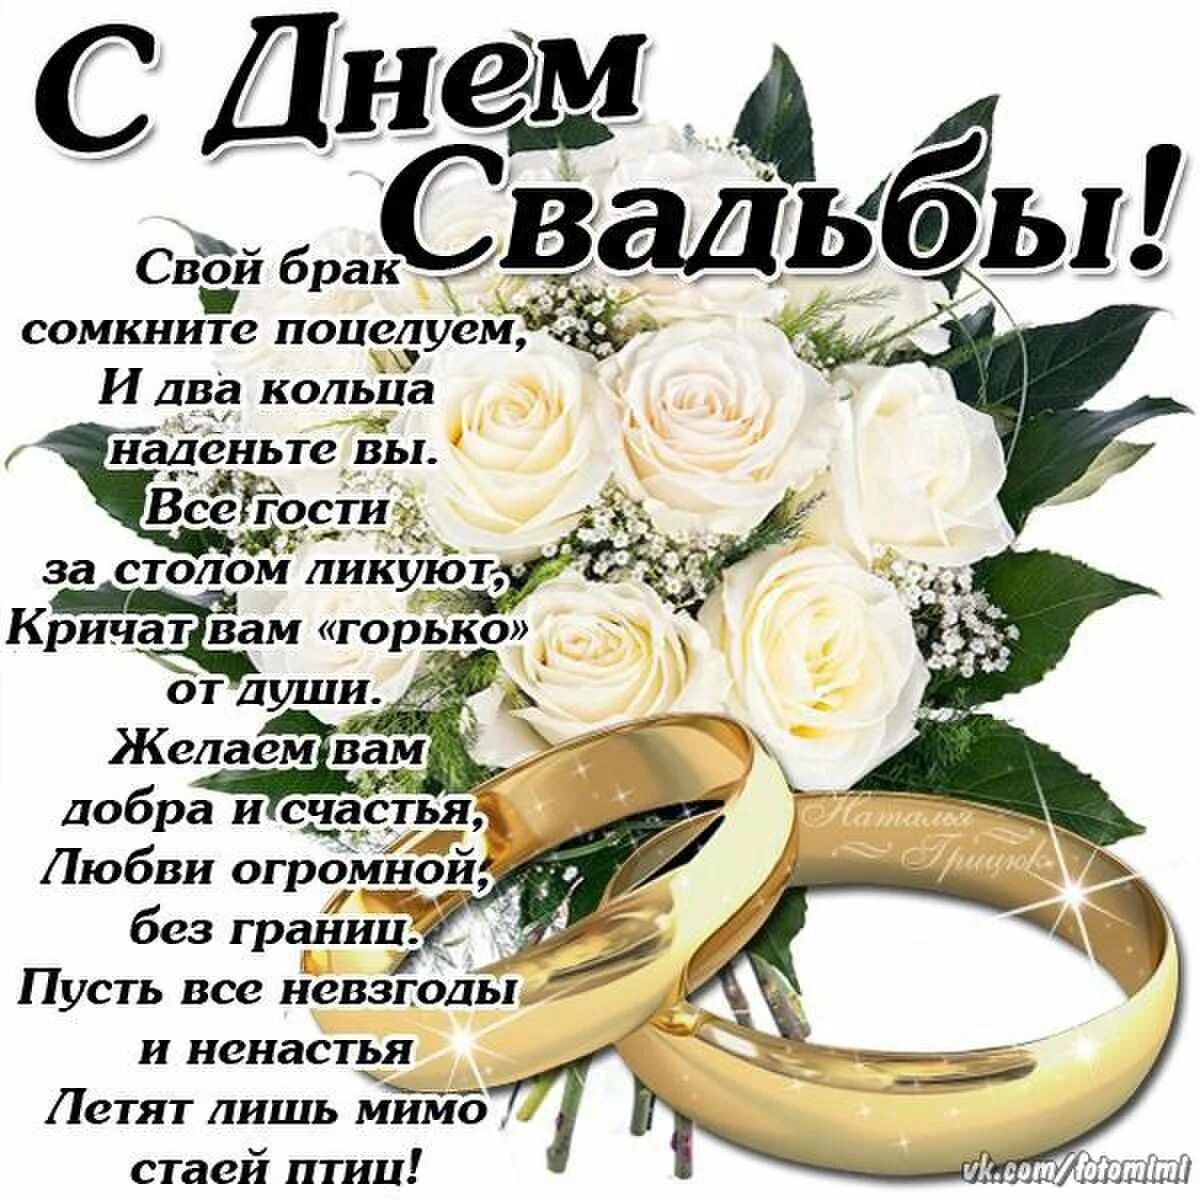 Поздравление с днем свадьбы друзьям своими словами. С днём свадьбы поздравления. Поздравления с днём свадьбы красивые. Поздравления со свадьбой в стихах. Поздравления со свадьбой красивые.